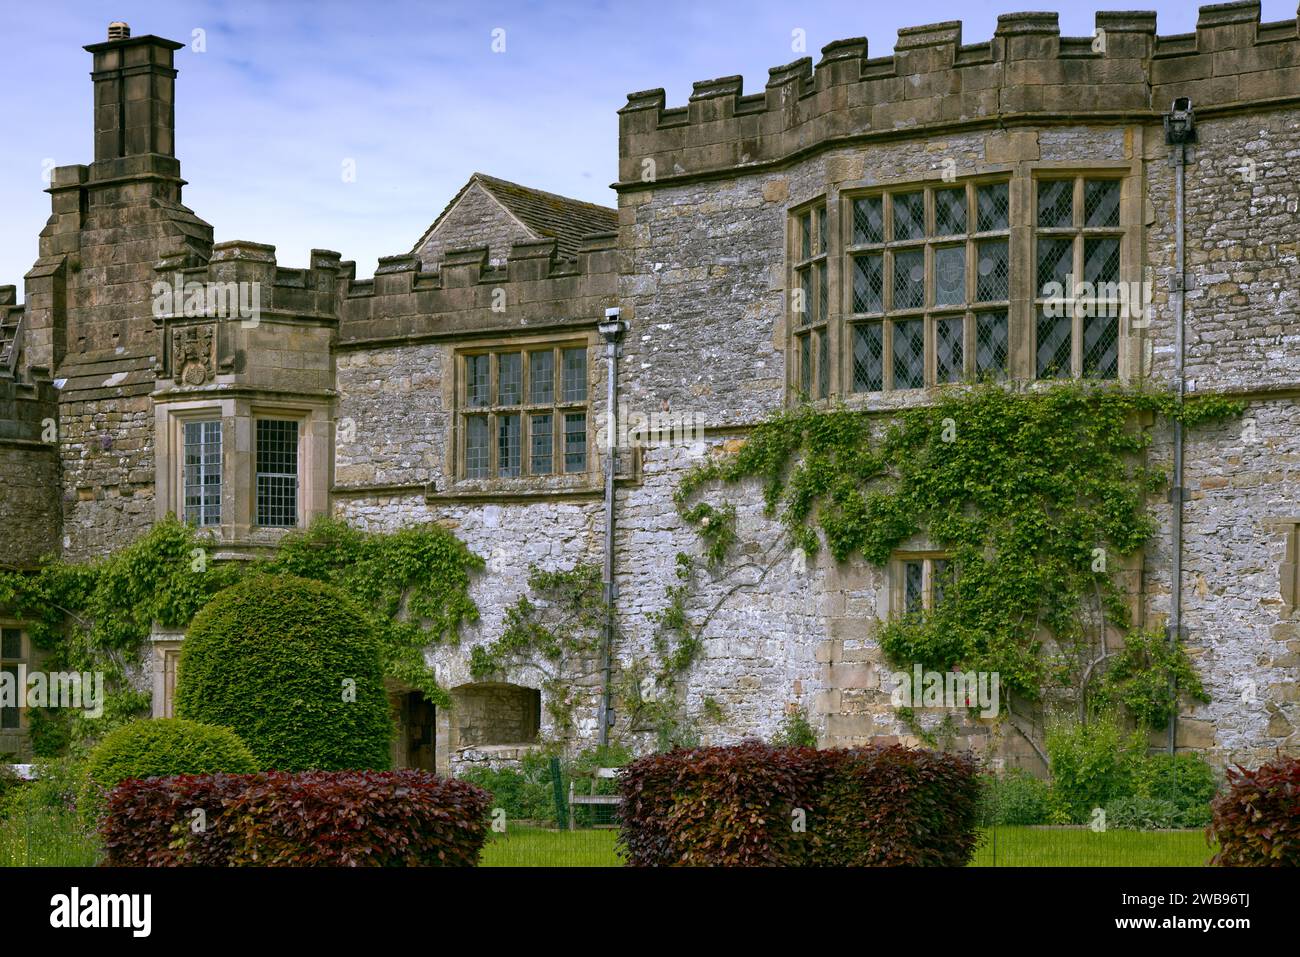 Peak District, Bakewell, Derbyshire, England, Großbritannien - Haddon Hall mittelalterliches Herrenhaus mit zinnenverkleideten Wänden, Erkerfenstern und Schornsteinen Stockfoto